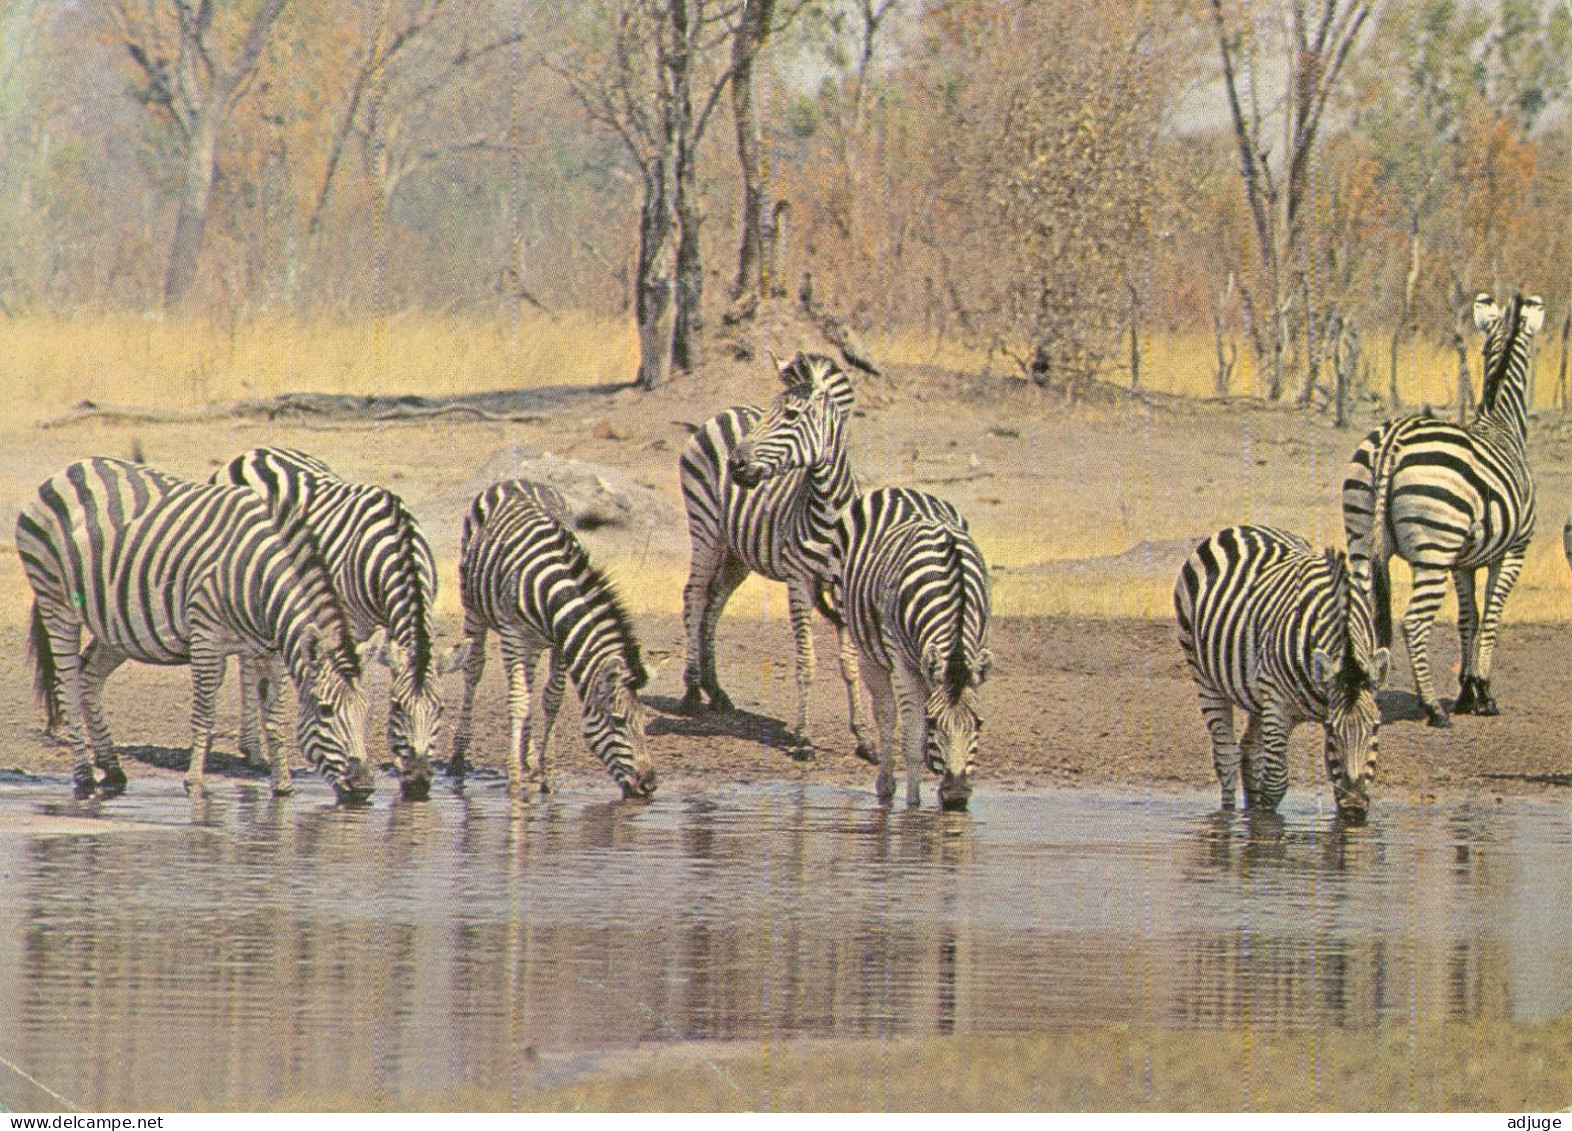 CPM- RHODÉSIE - 1975 - Burchells Zebras, Wankie National Park, Rhodesia ( ZIMBABWE)* TBE - Simbabwe